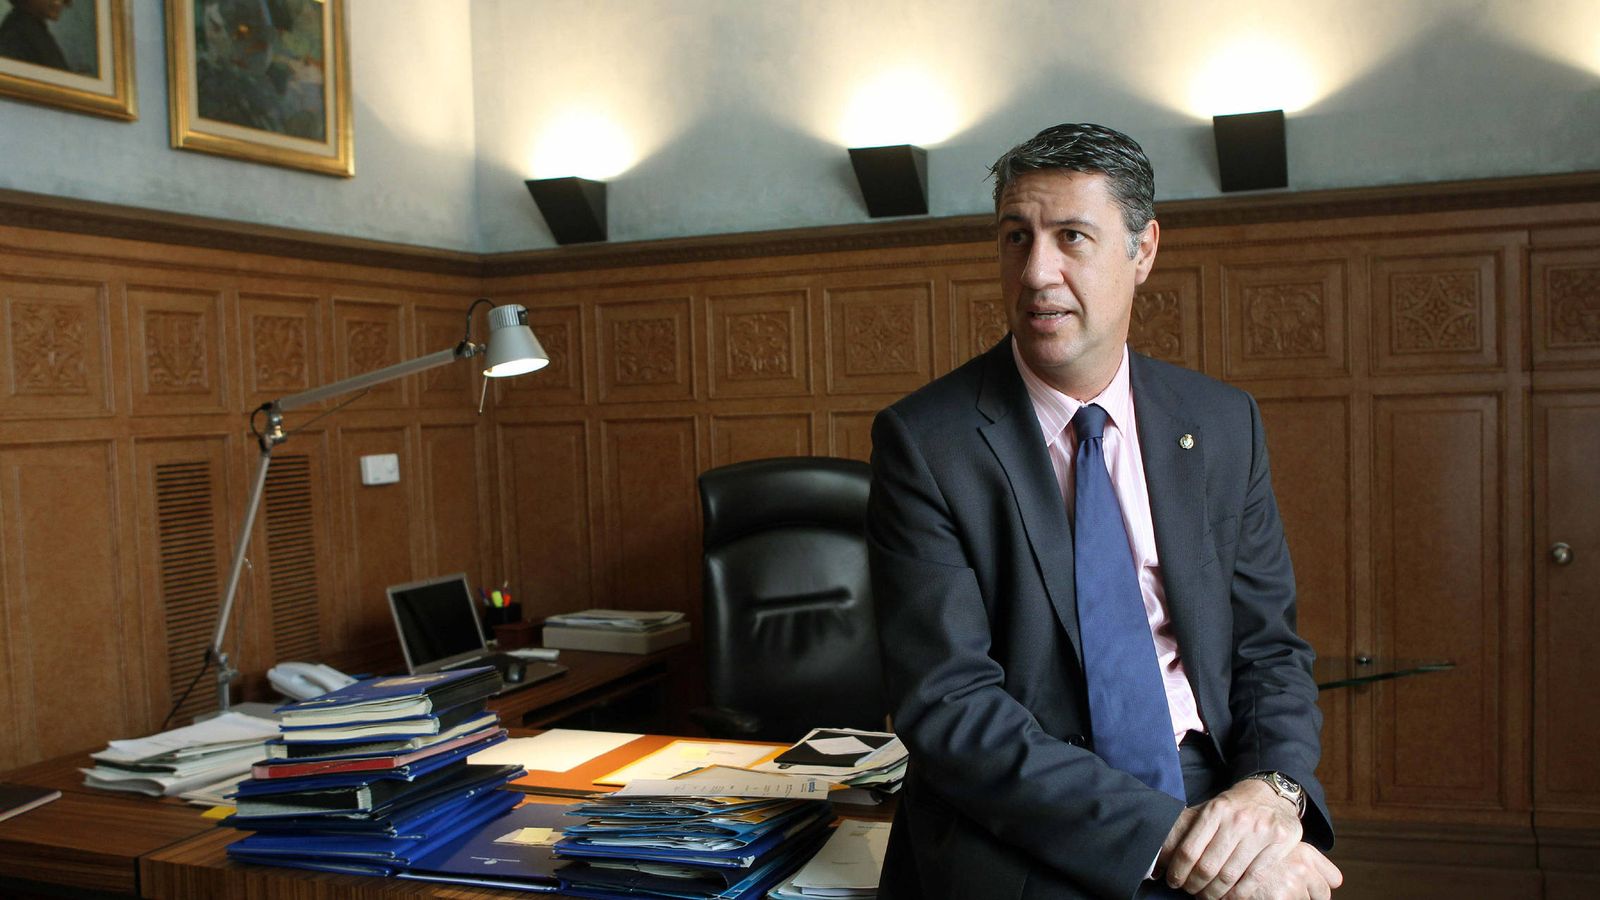 Foto: El alcalde de Badalona, Xavier García Albiol, en su despacho. (Efe)